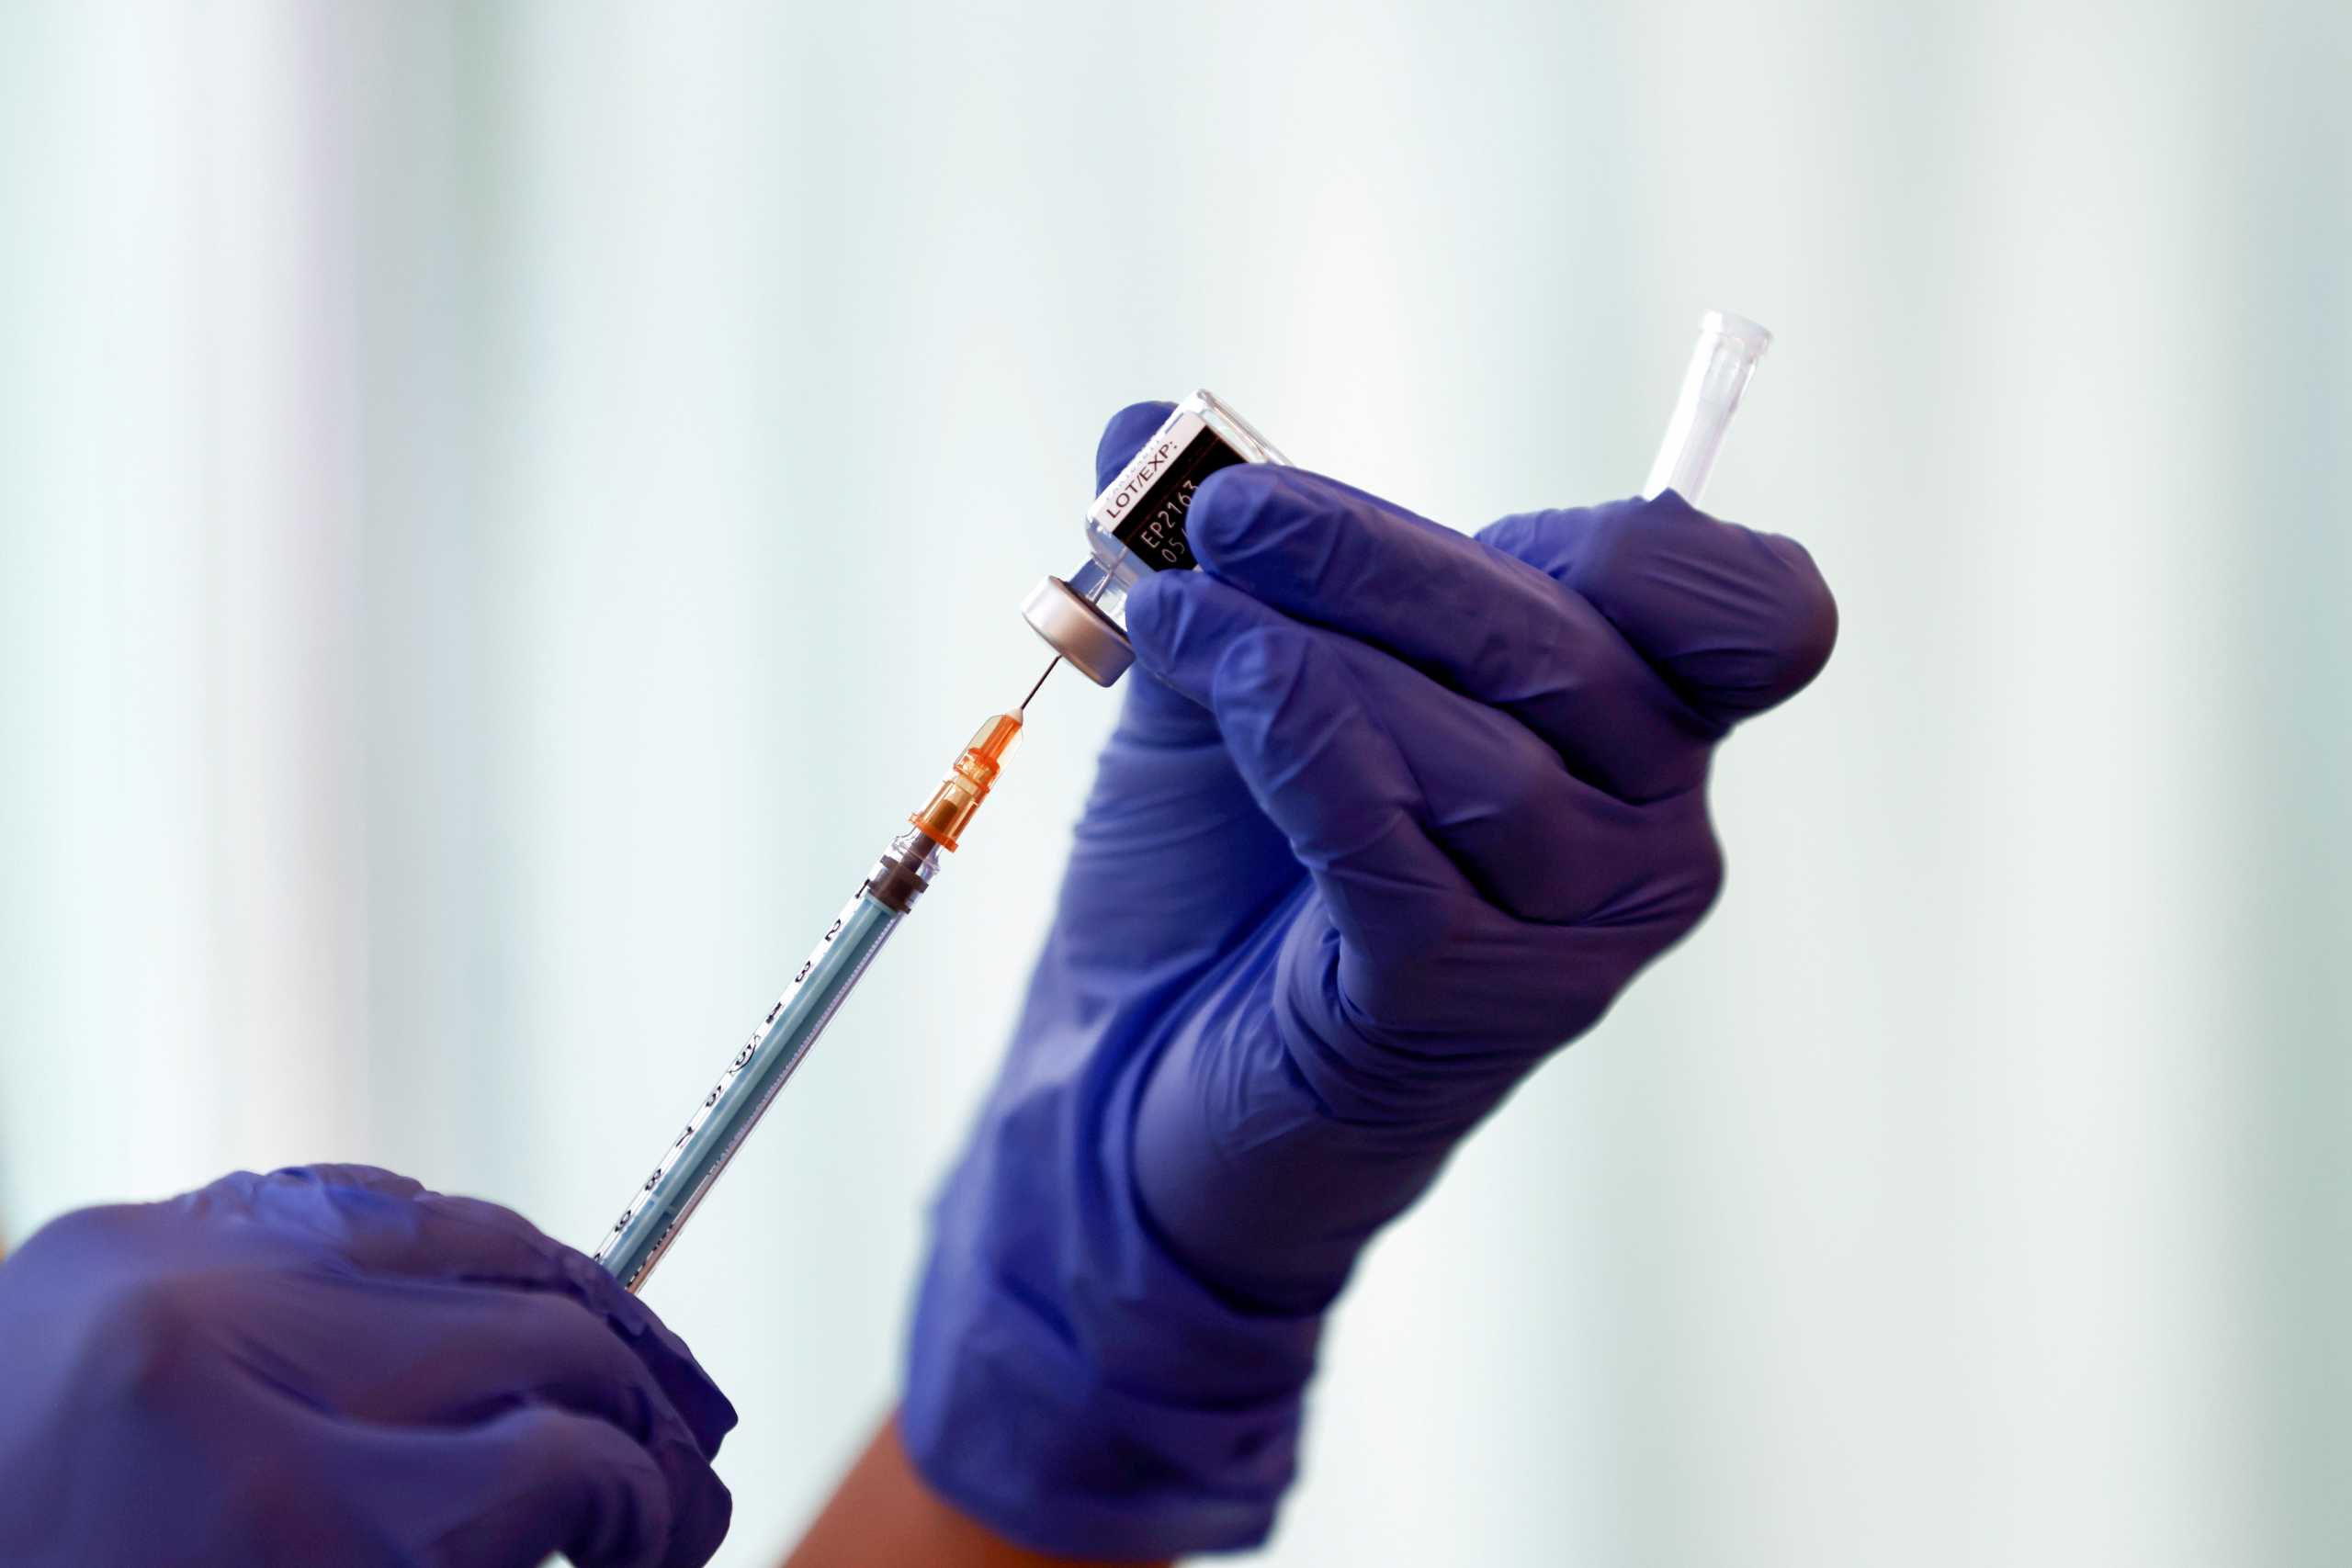 Το Μεξικό ξεκινά τις κλινικές του τελικού σταδίου για το νέο κινεζικό εμβόλιο τεχνολογίας mRNA